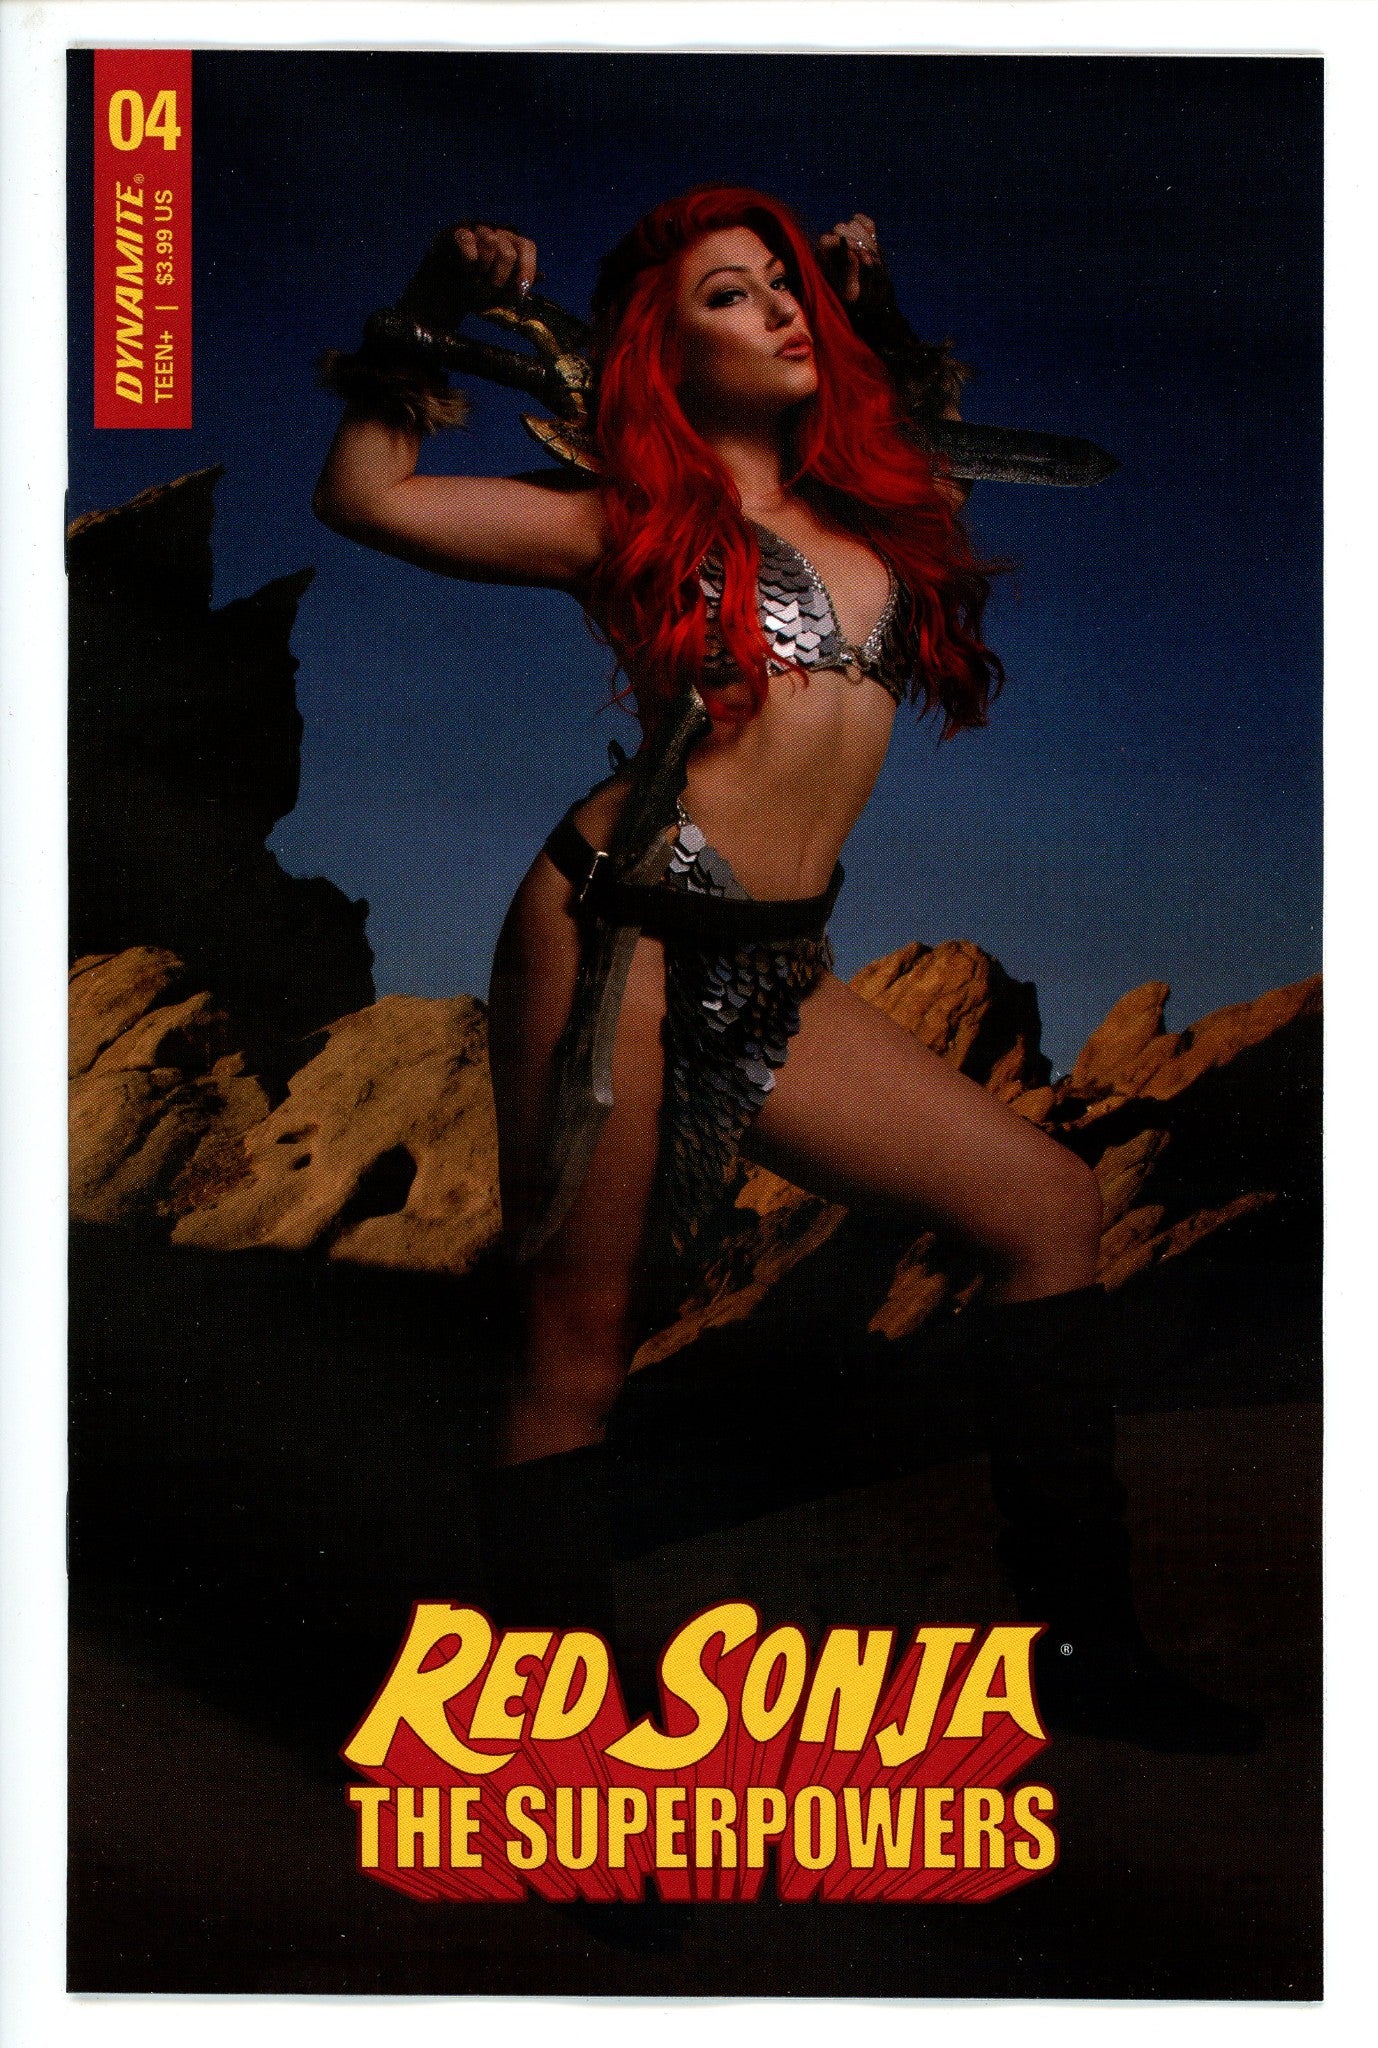 Red Sonja the Superpowers 4 Cosplay Variant-CaptCan Comics Inc-CaptCan Comics Inc